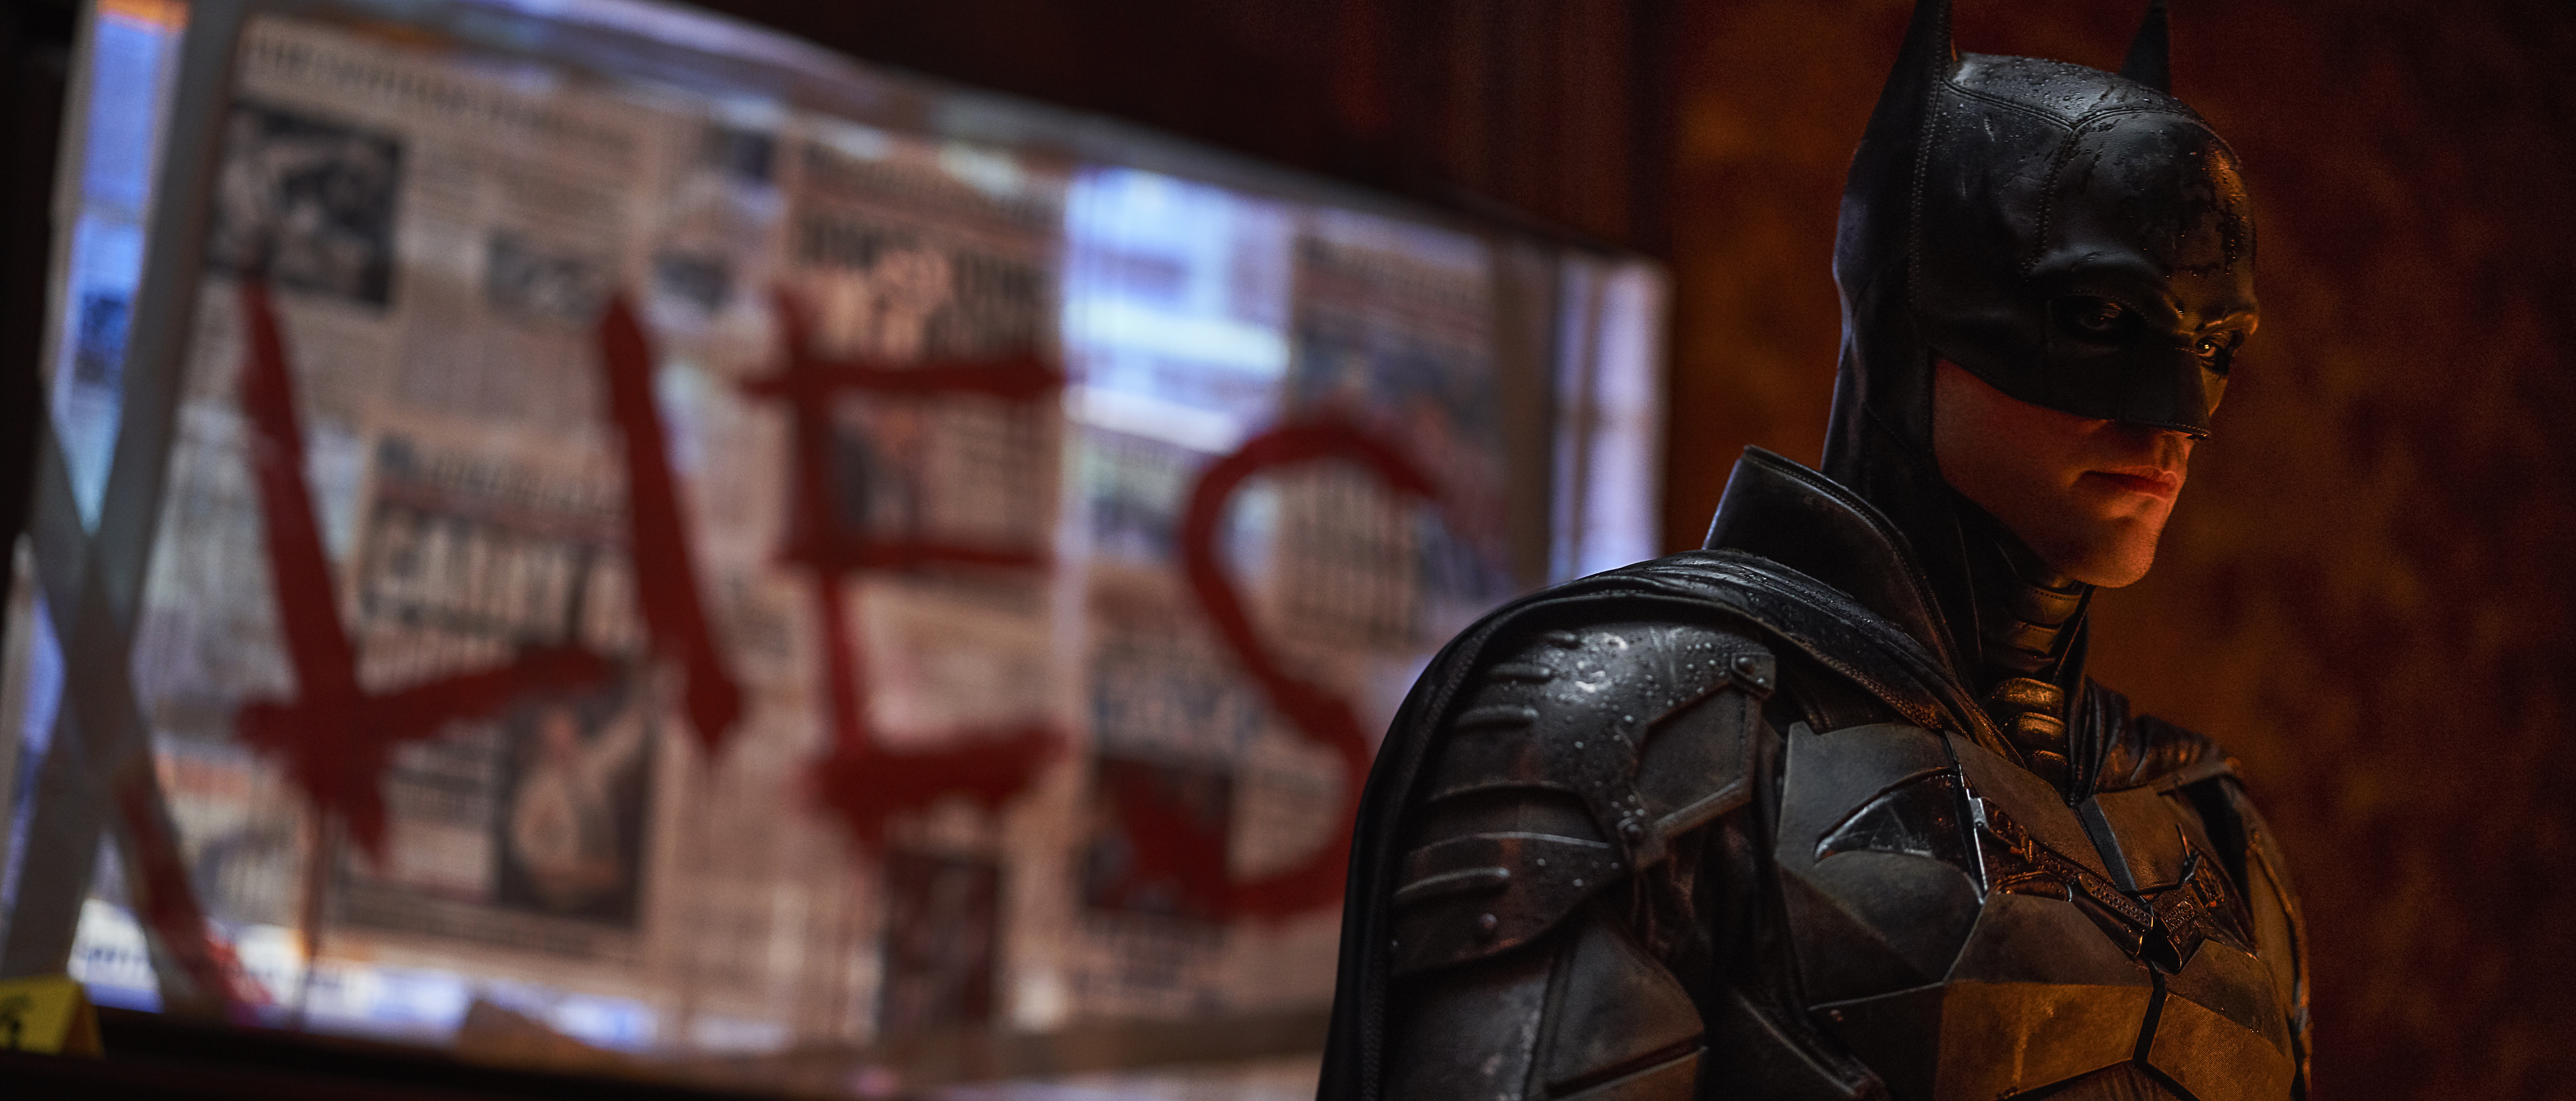 Ambientação de Gotham City é sombria e fiel às HQs